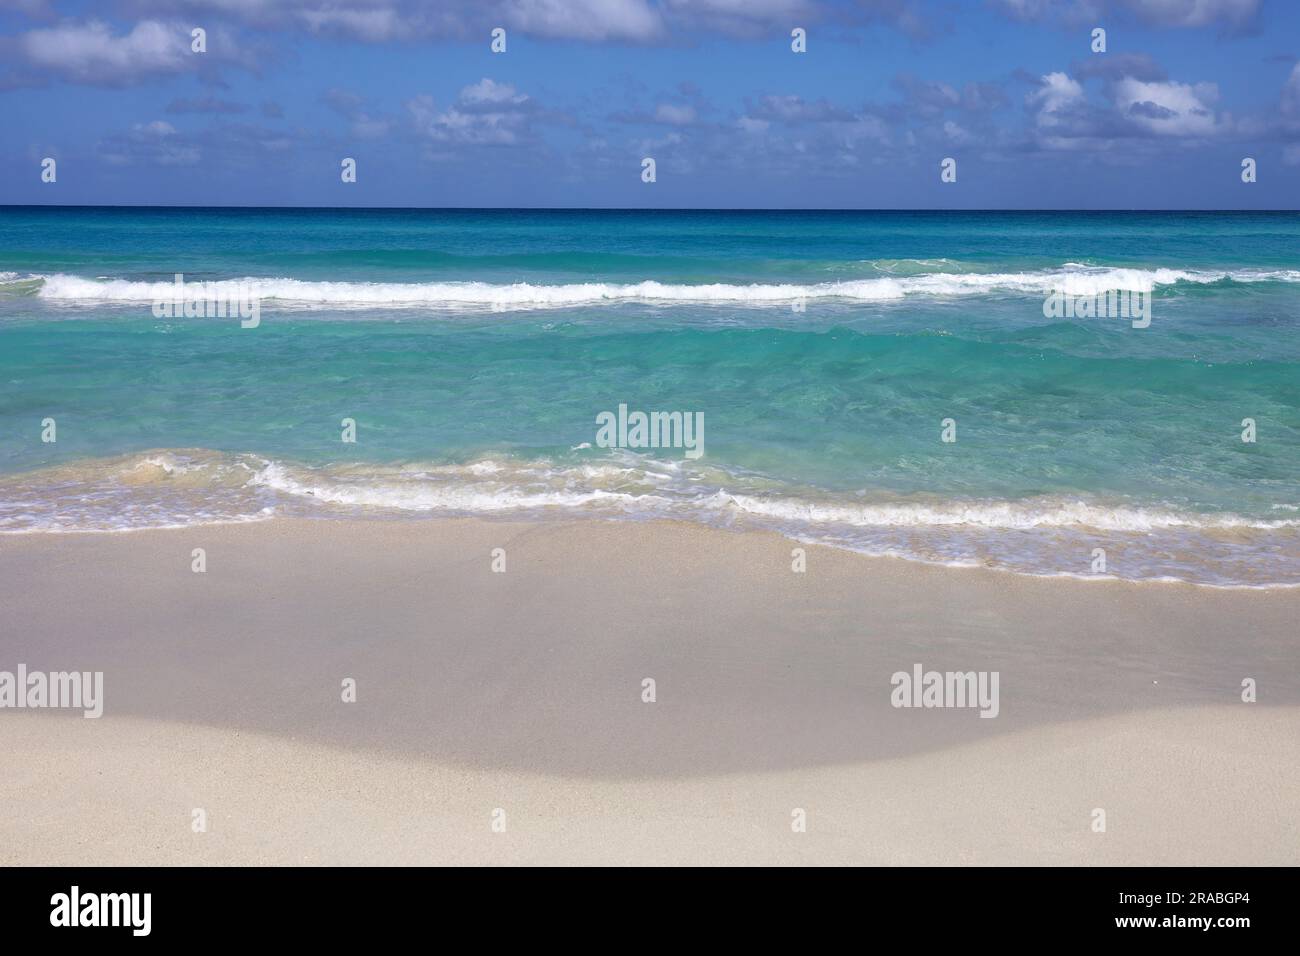 Spiaggia di mare vuota con sabbia bianca, vista delle onde azzurre e del cielo blu con le nuvole. Costa caraibica, sfondo per vacanze in una natura paradisiaca Foto Stock